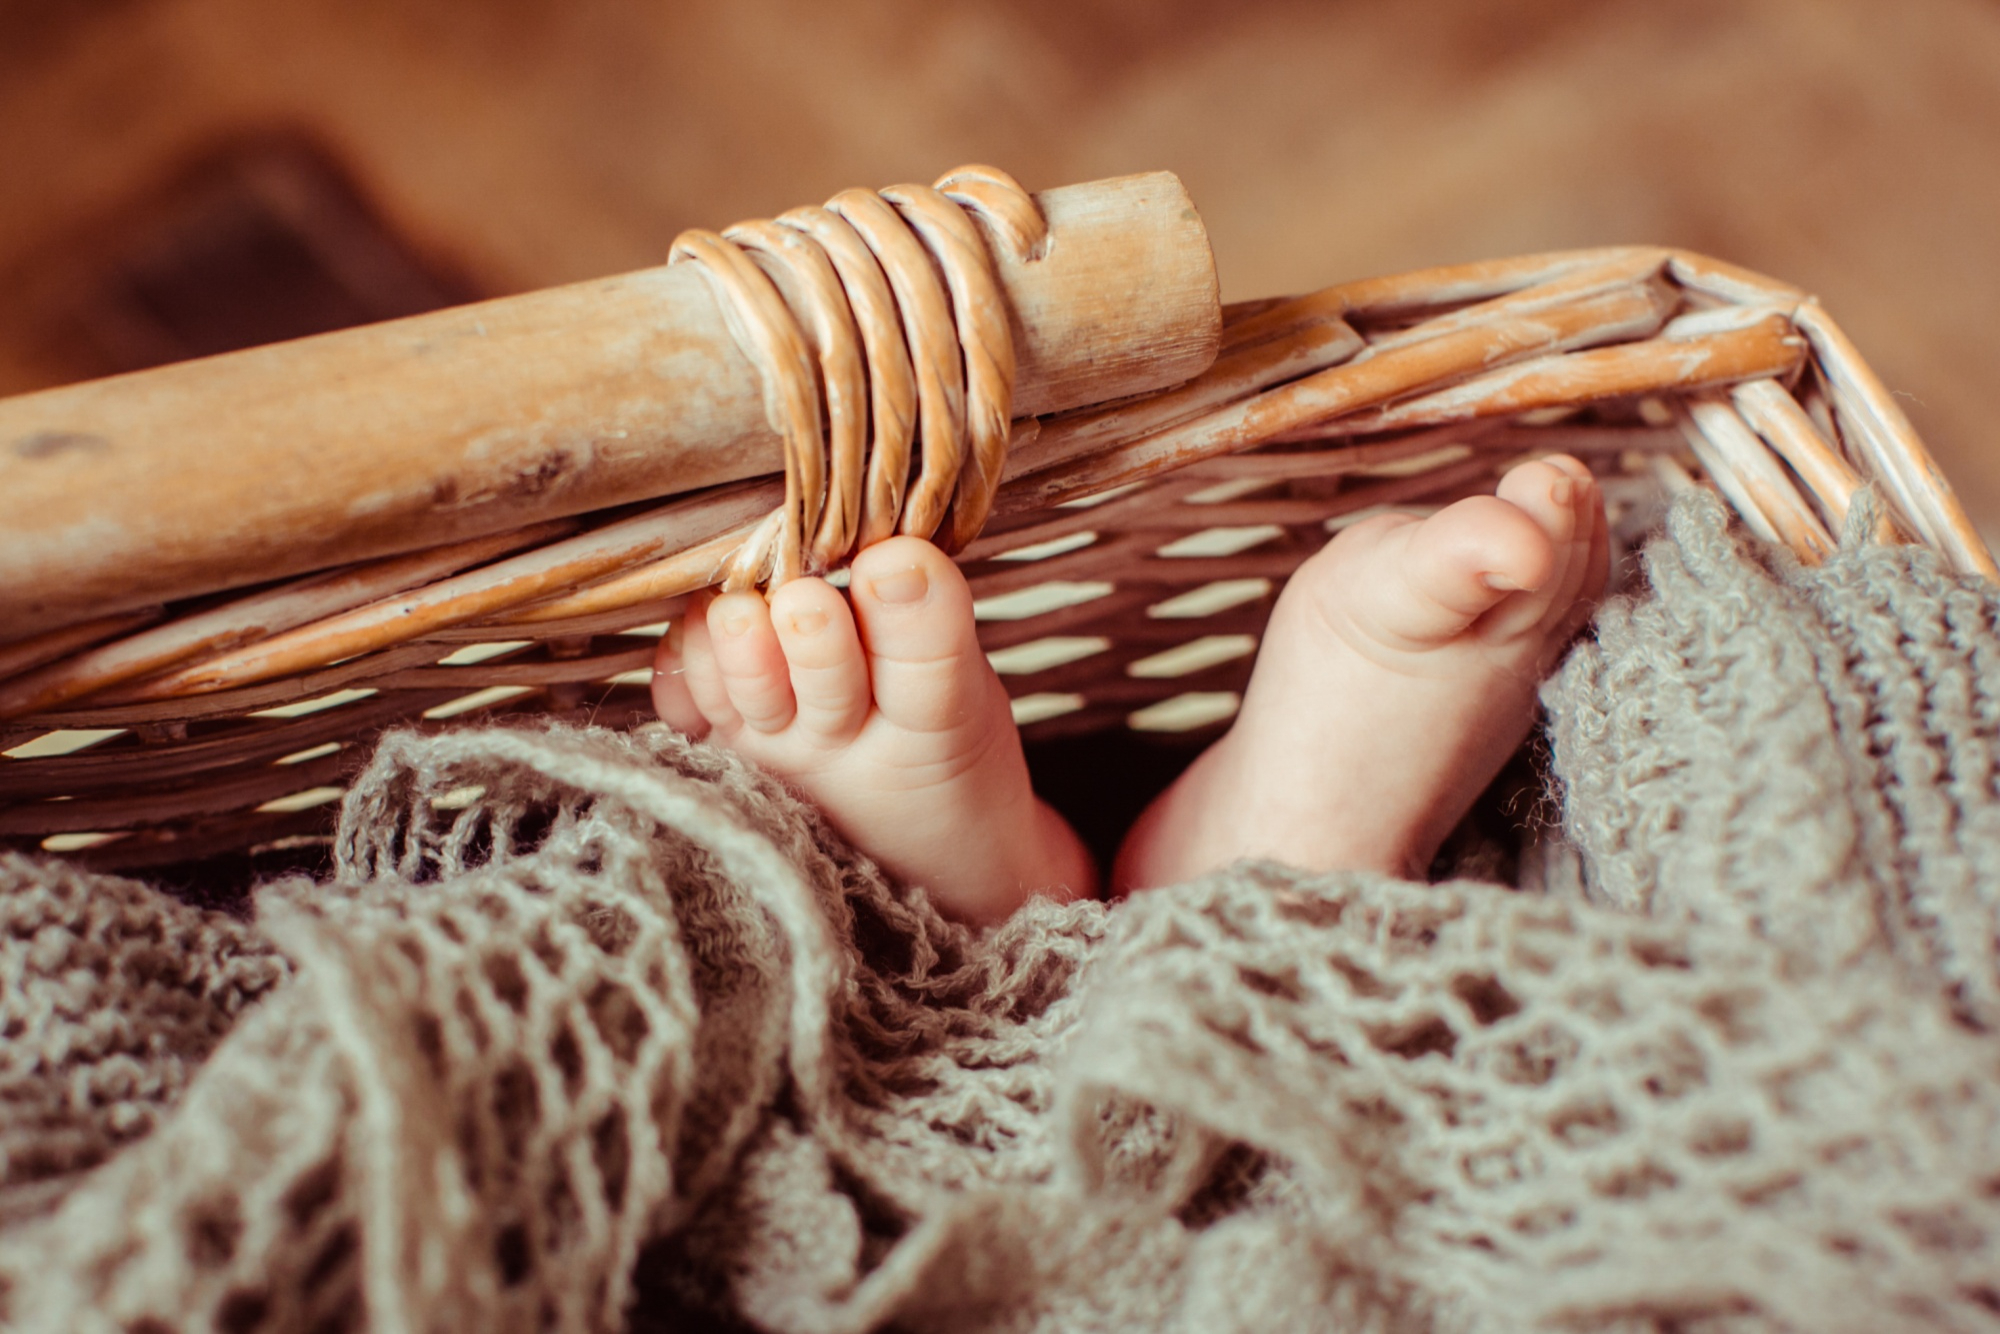 Les pieds d'un bébé couché dans un panier | Source : Freepik